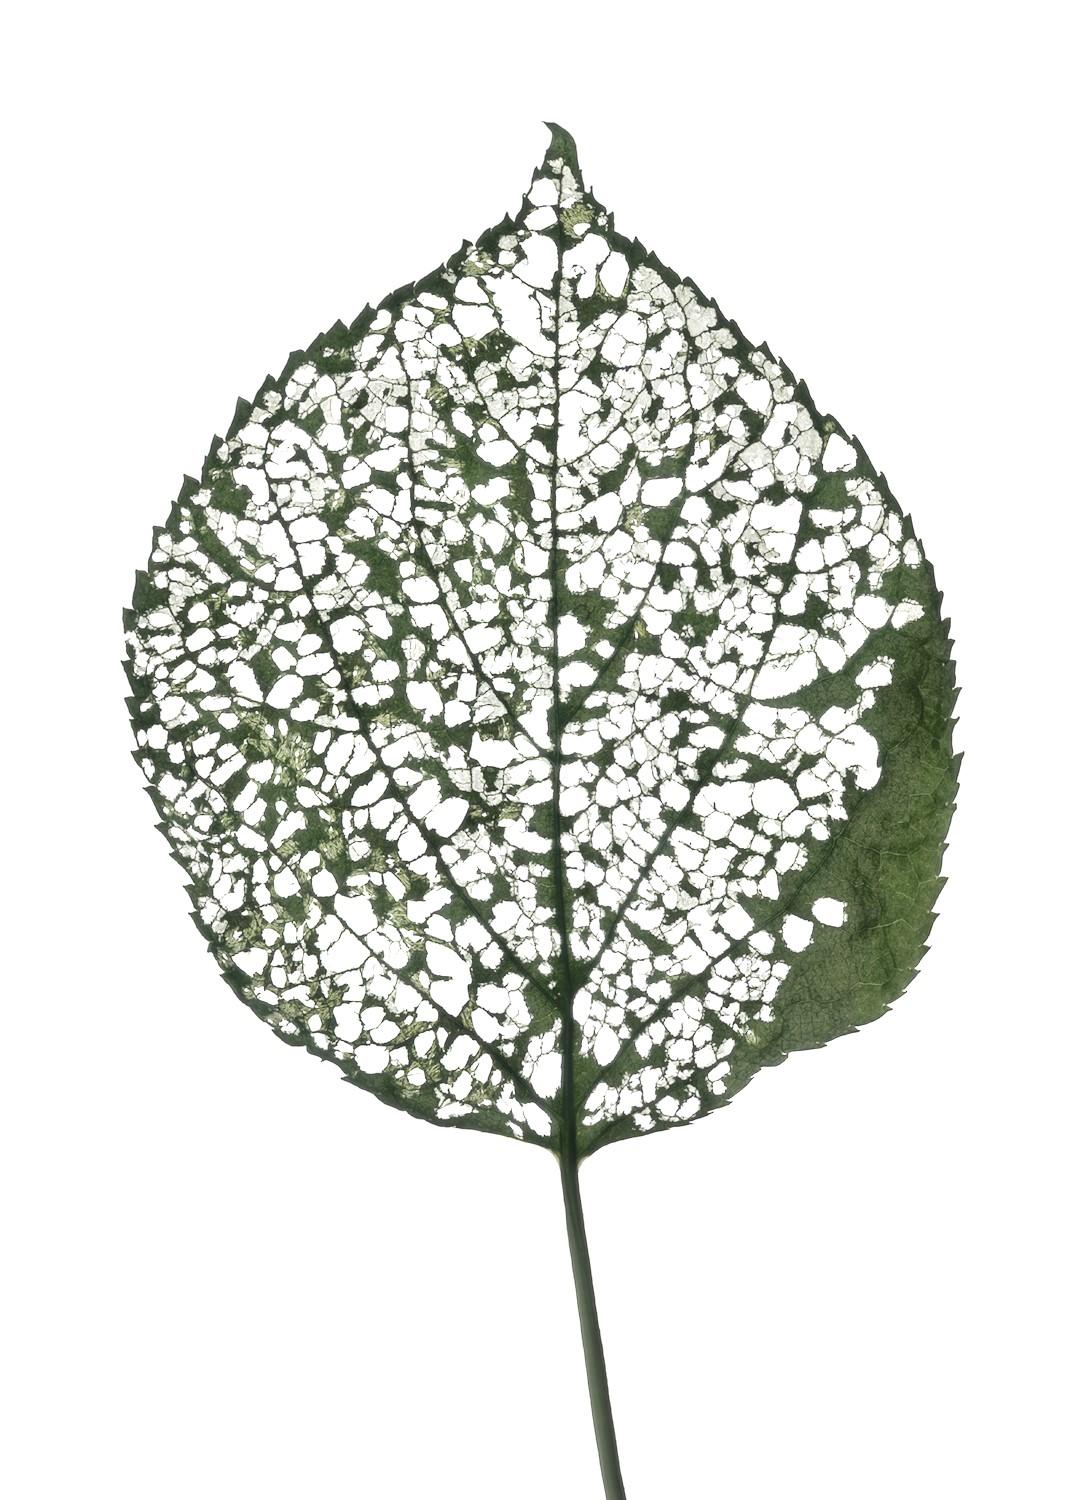 Chad Kleitsch Still-Life Photograph - Eaten Leaf #115: Still Life Color Scanography Photograph of a Green Leaf